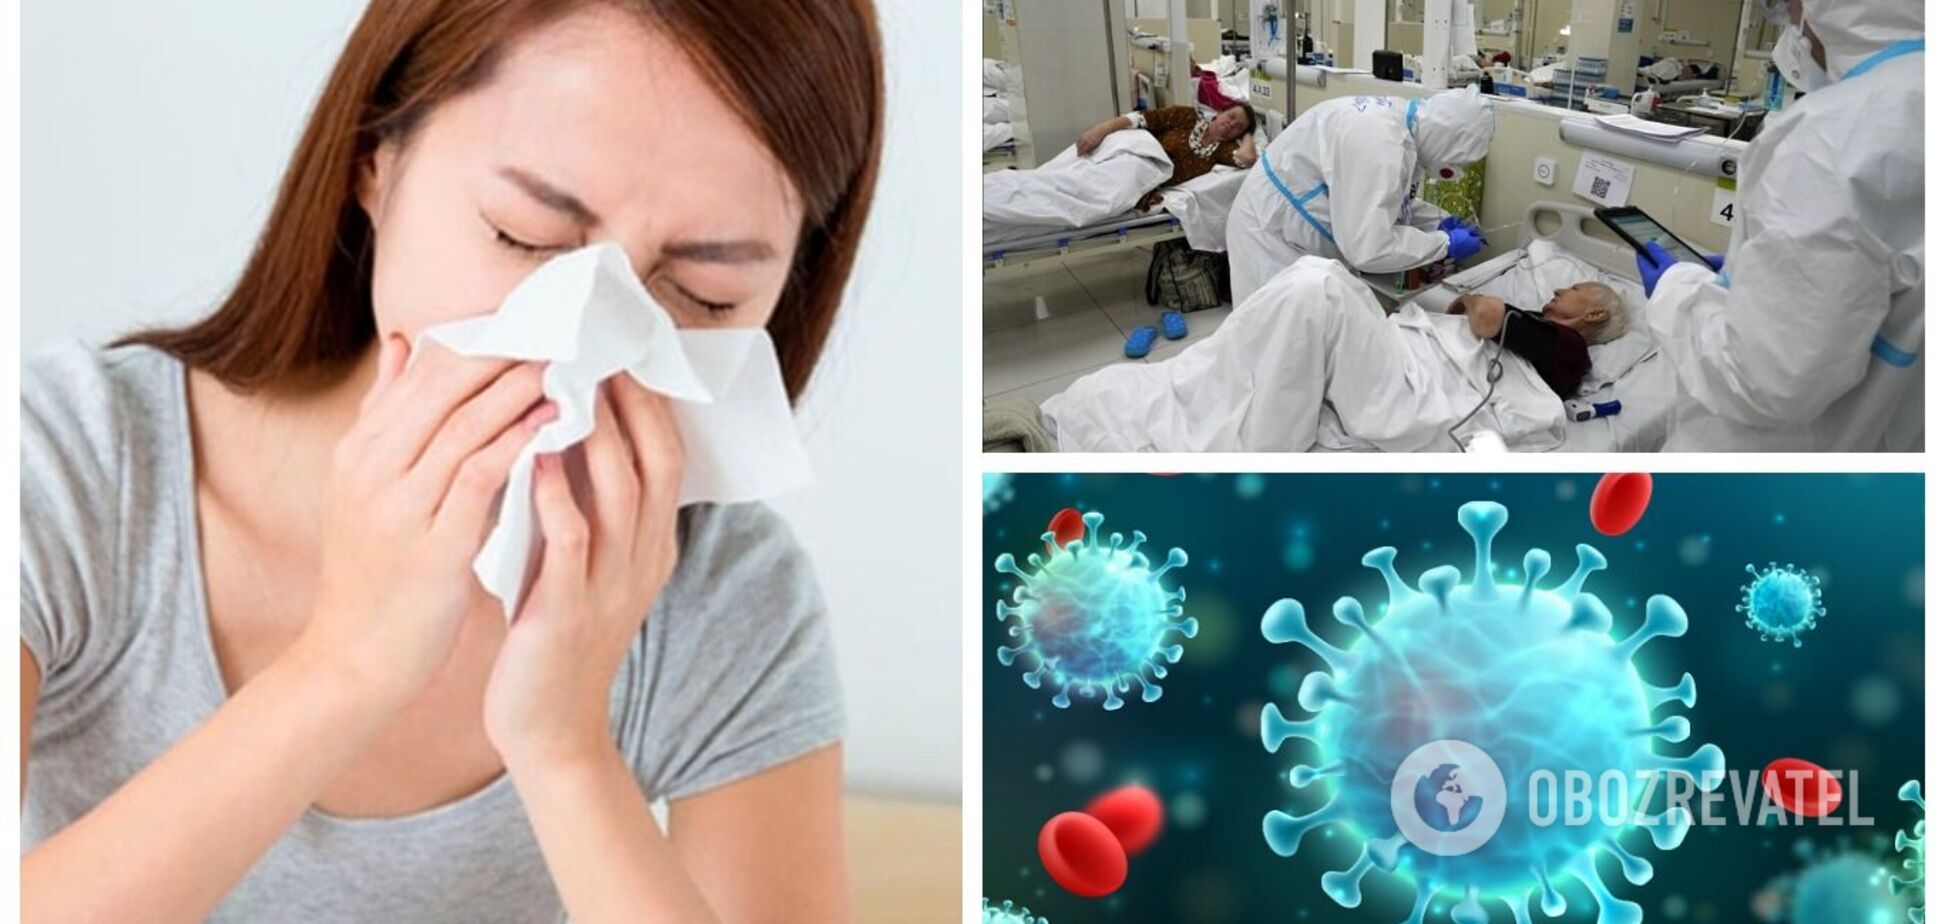 Если придет грипп и объединится с COVID-19, то шансы смерти увеличатся в два раза, - врач о рисках для украинцев